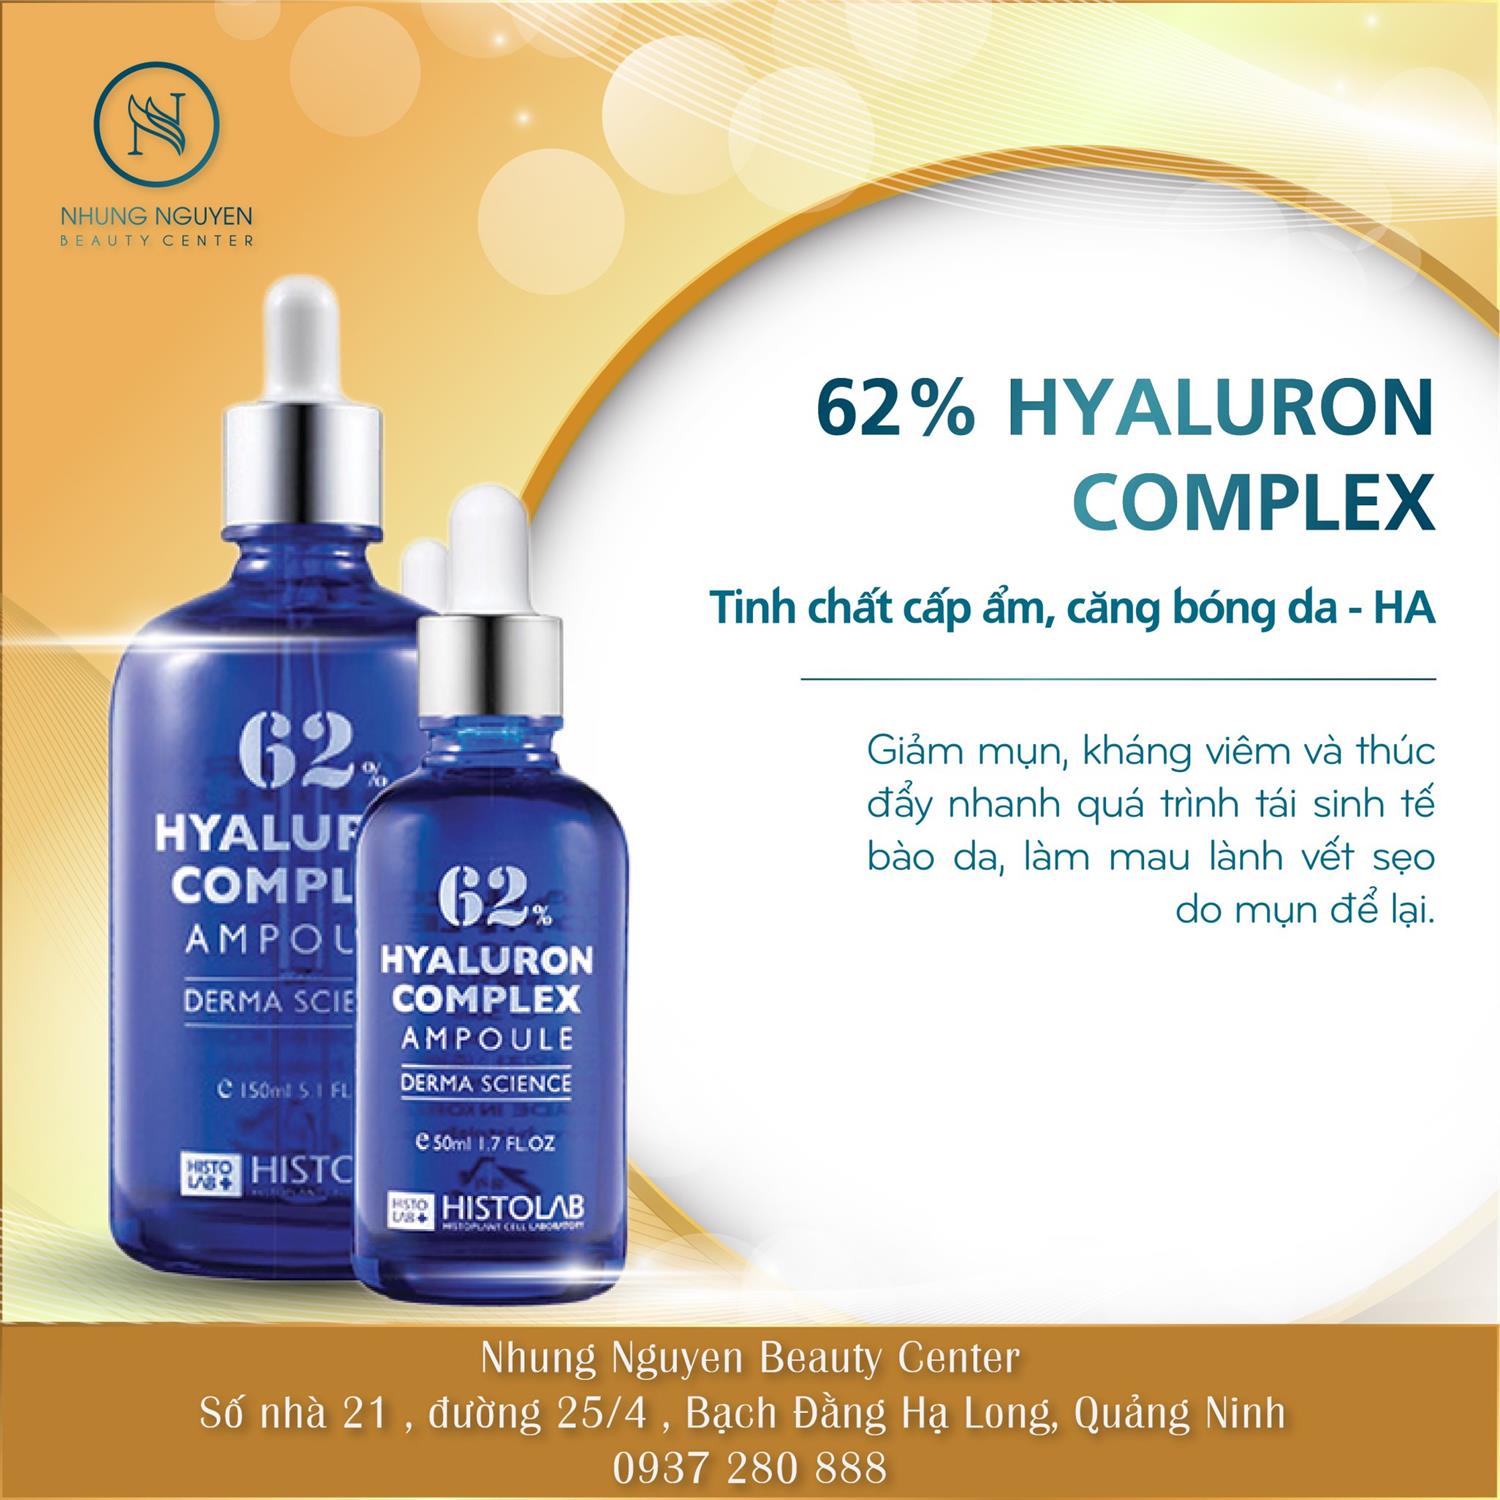 HYALURON COMPLEX AMPOULE 62% 150ML